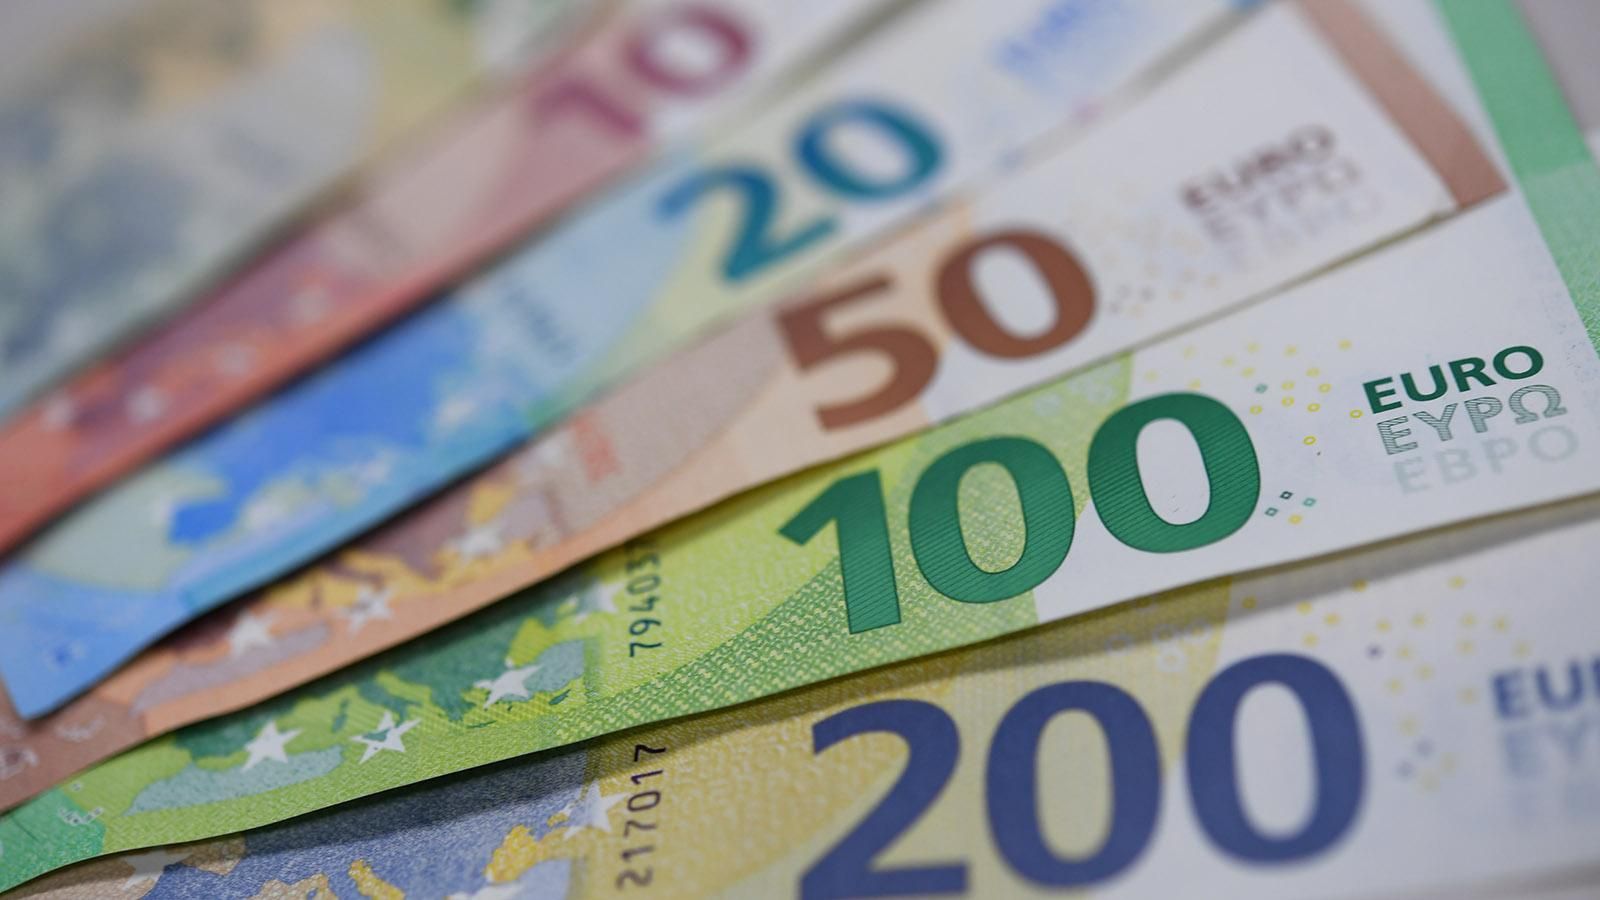 Наличный курс евро, доллара на 5 ноября 2020 2020 – курс валют